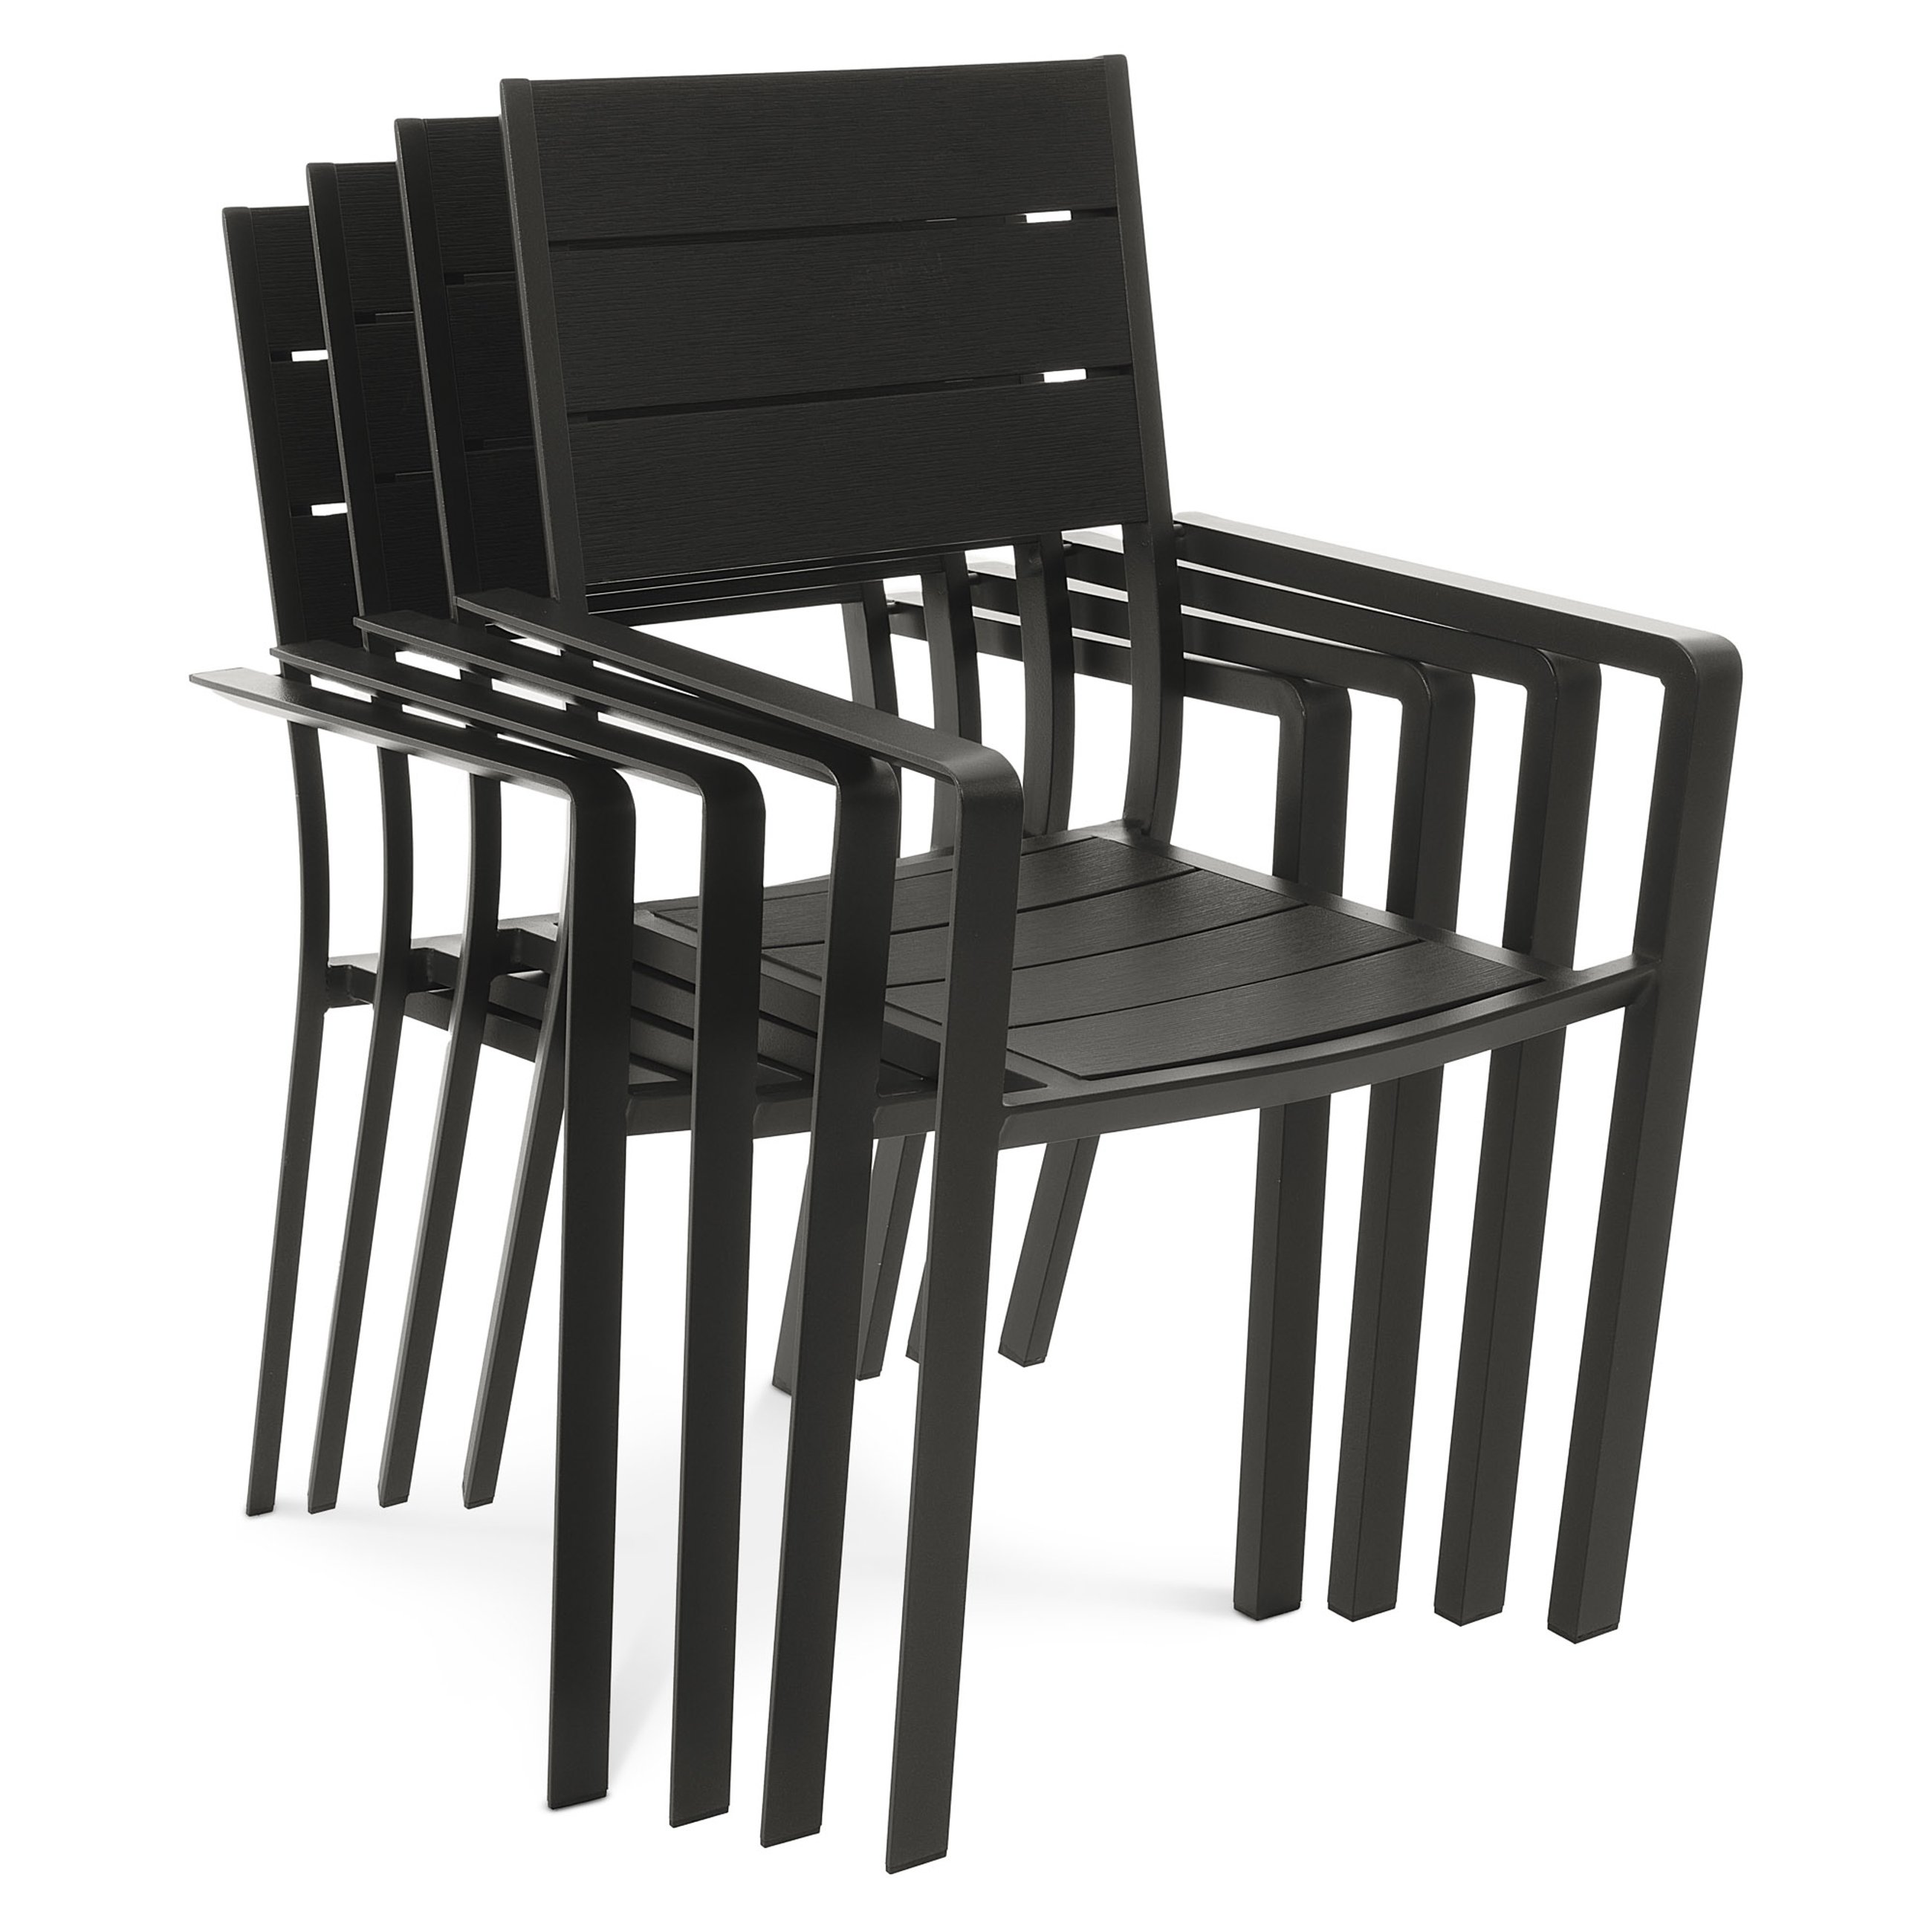 Krzesła Teri zostały zaprojektowane w taki sposób, aby ich kształt umożliwiał sztaplowanie